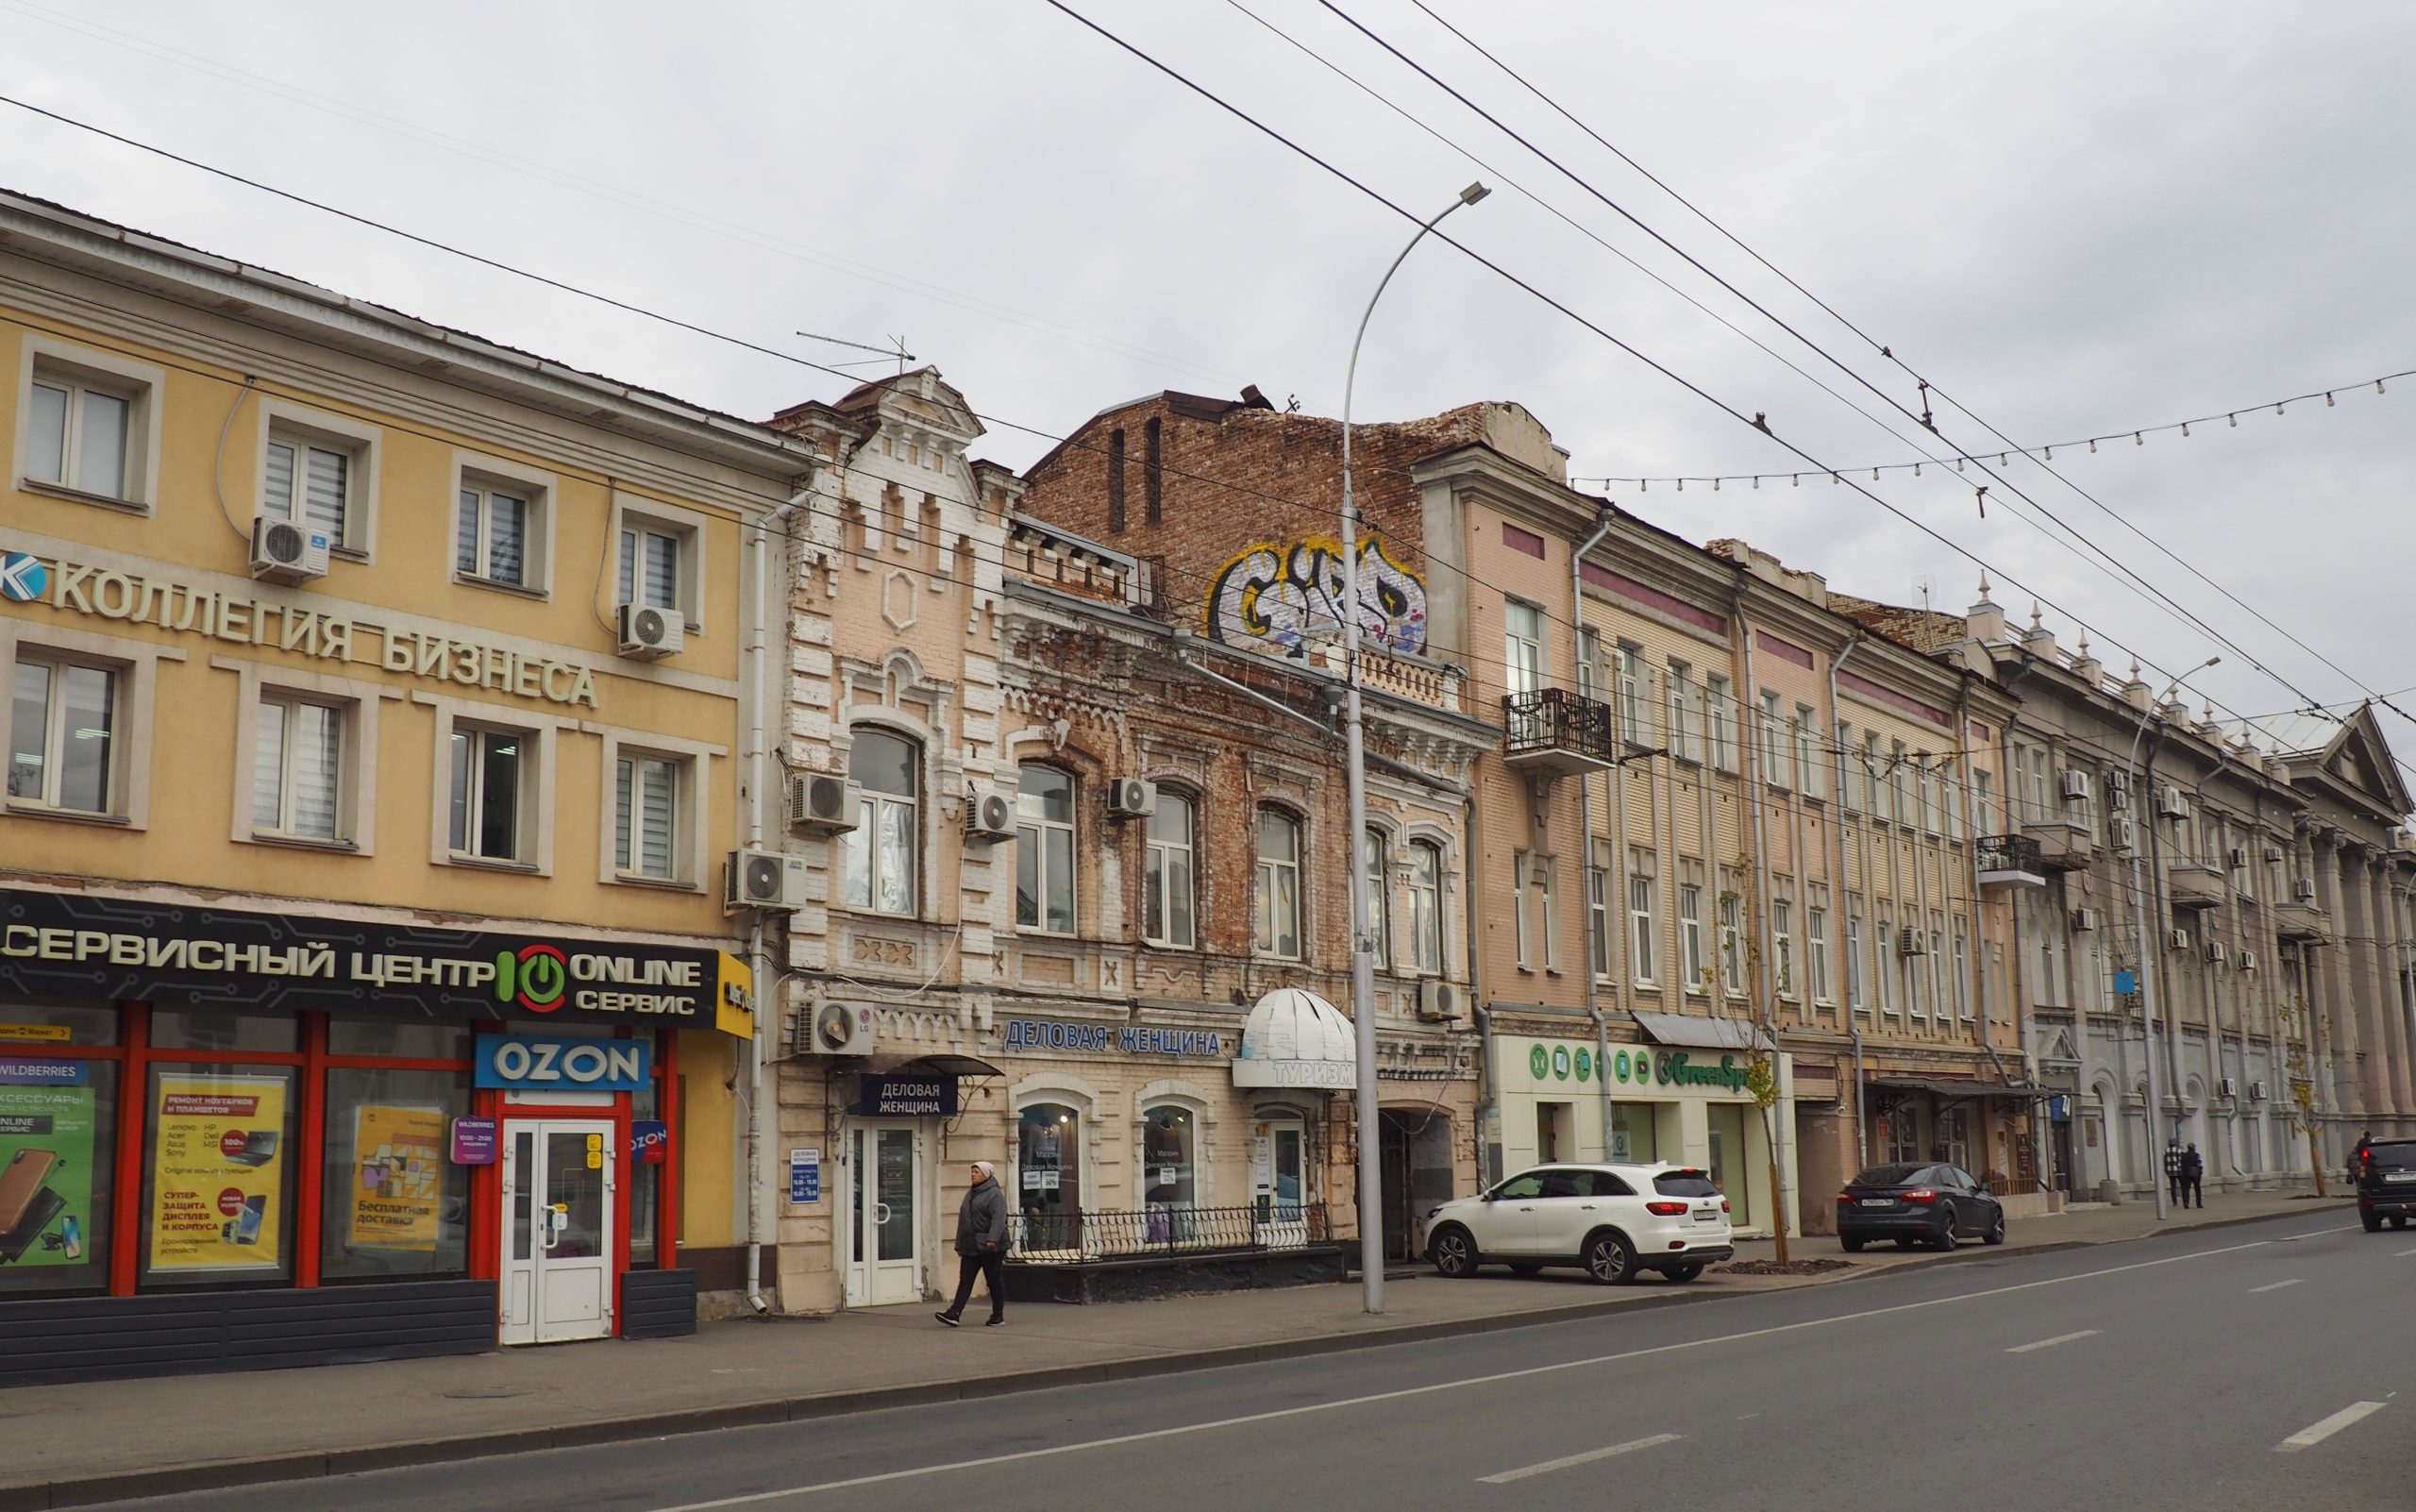 Саратов, улица Московская